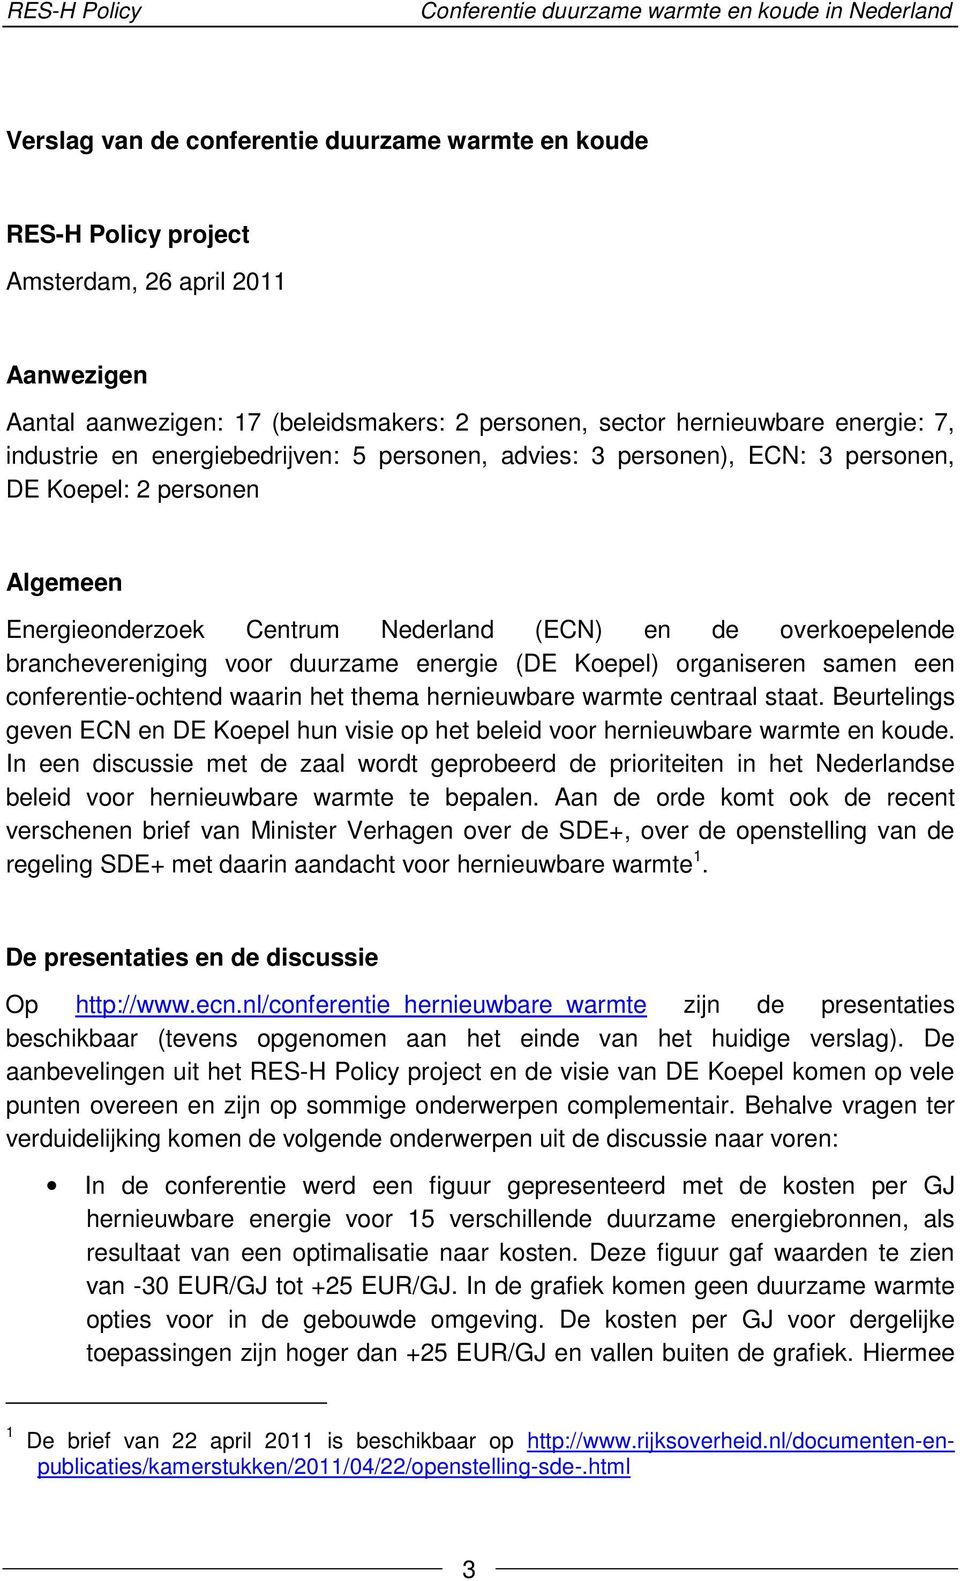 Nederland (ECN) en de overkoepelende branchevereniging voor duurzame energie (DE Koepel) organiseren samen een conferentie-ochtend waarin het thema hernieuwbare warmte centraal staat.